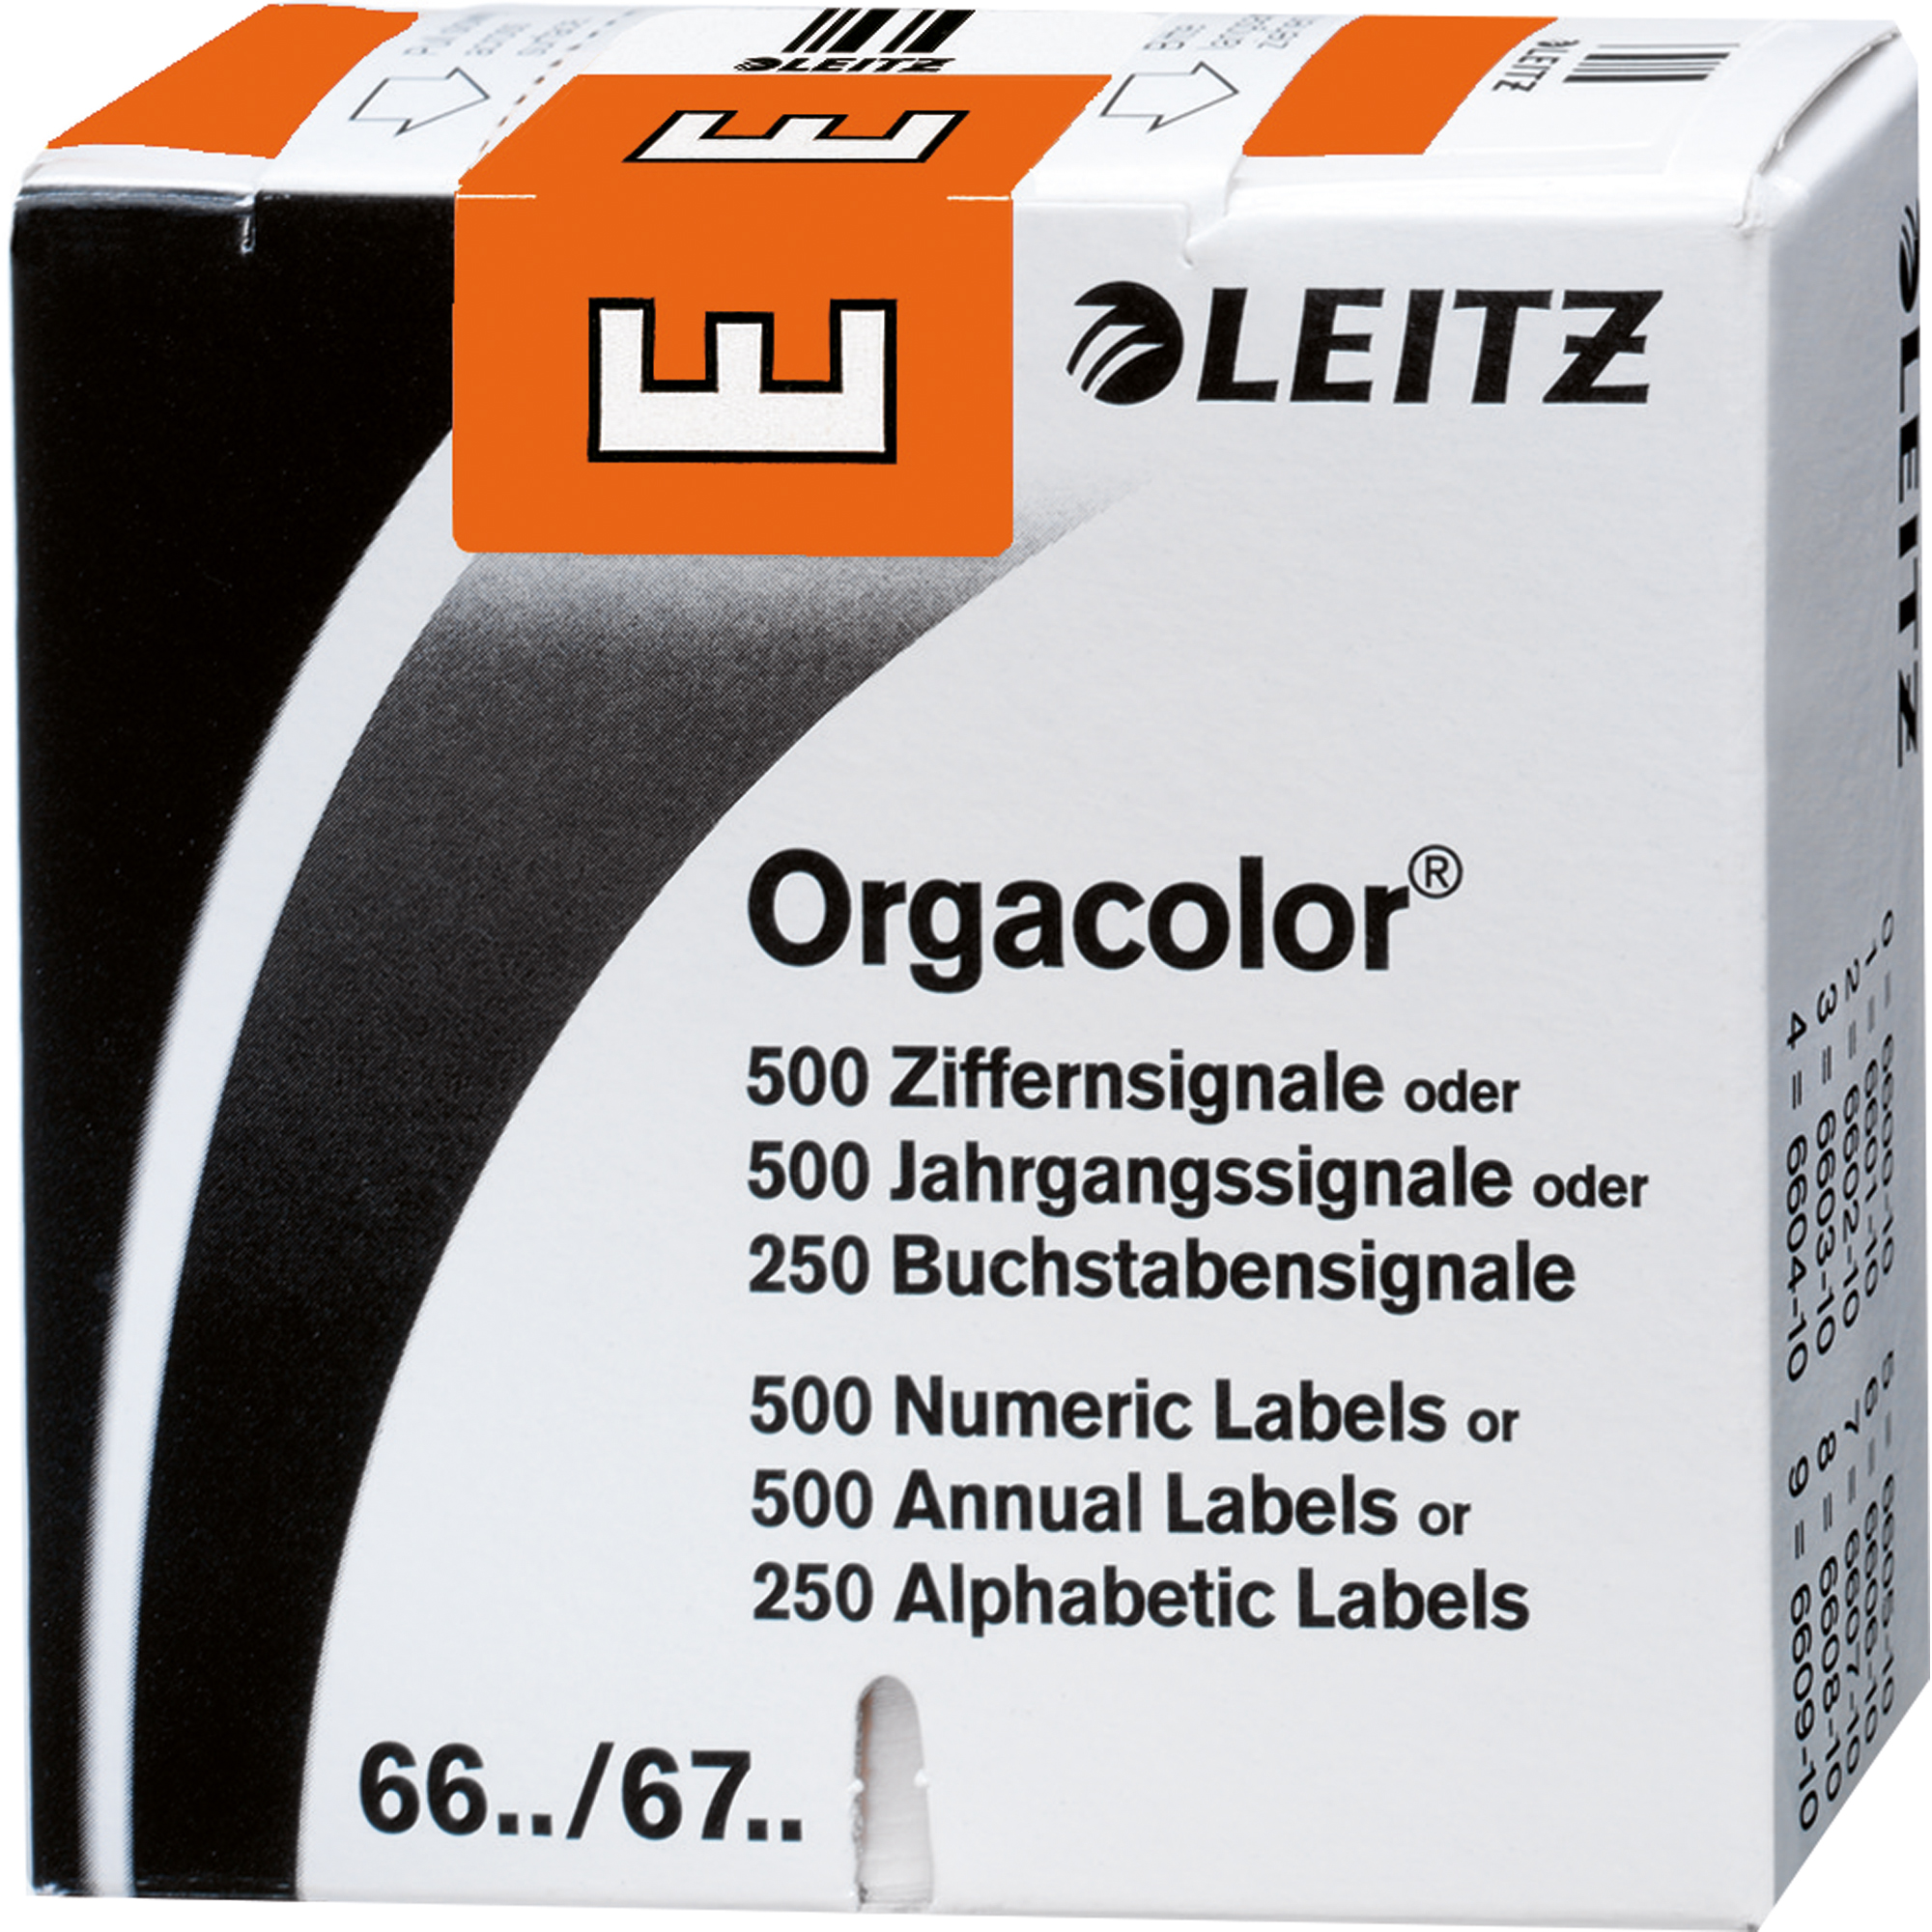 Leitz Buchstabensignal Orgacolor® orange E